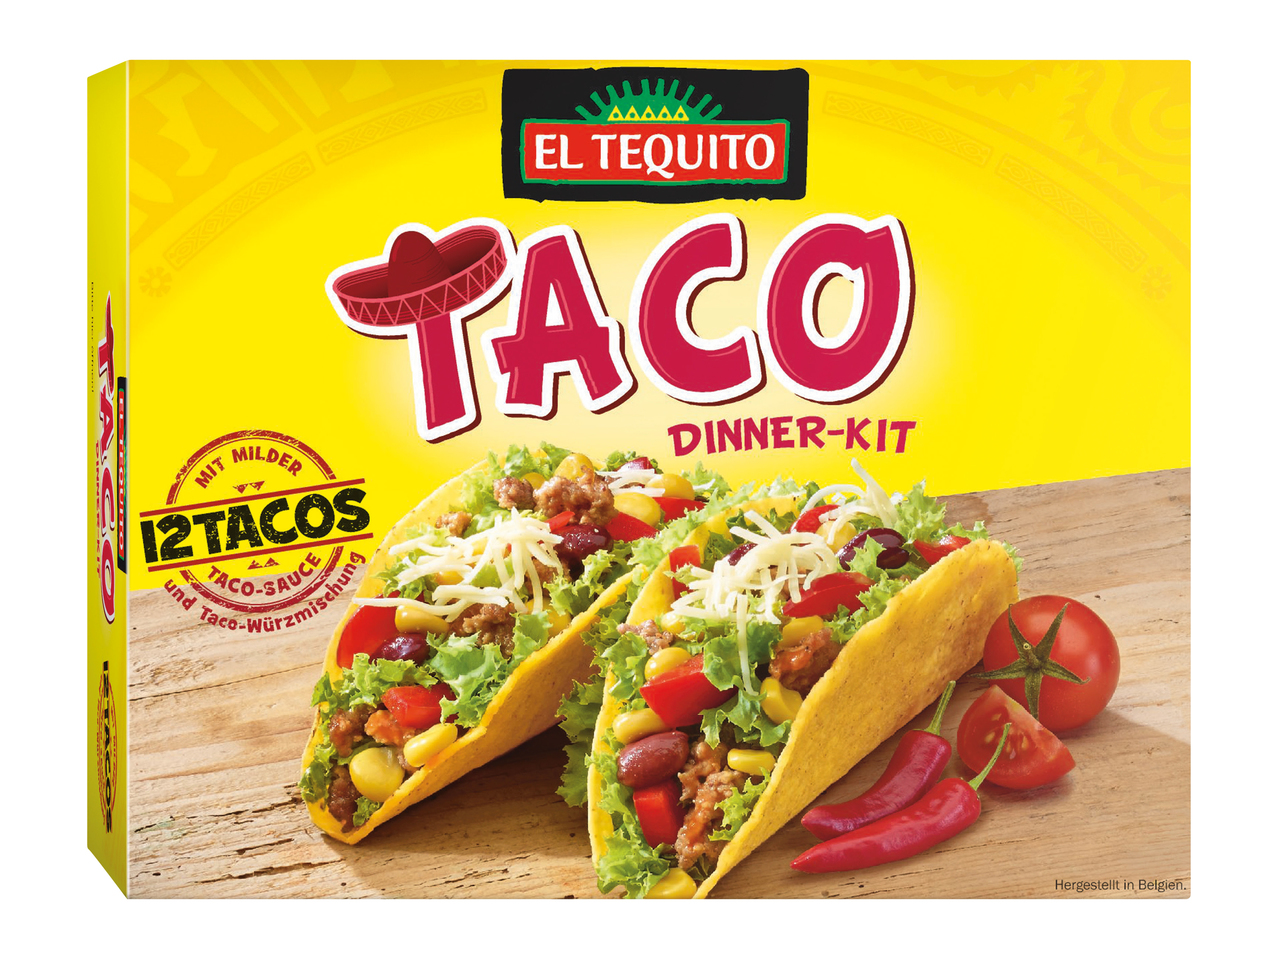 Taco dinner kit